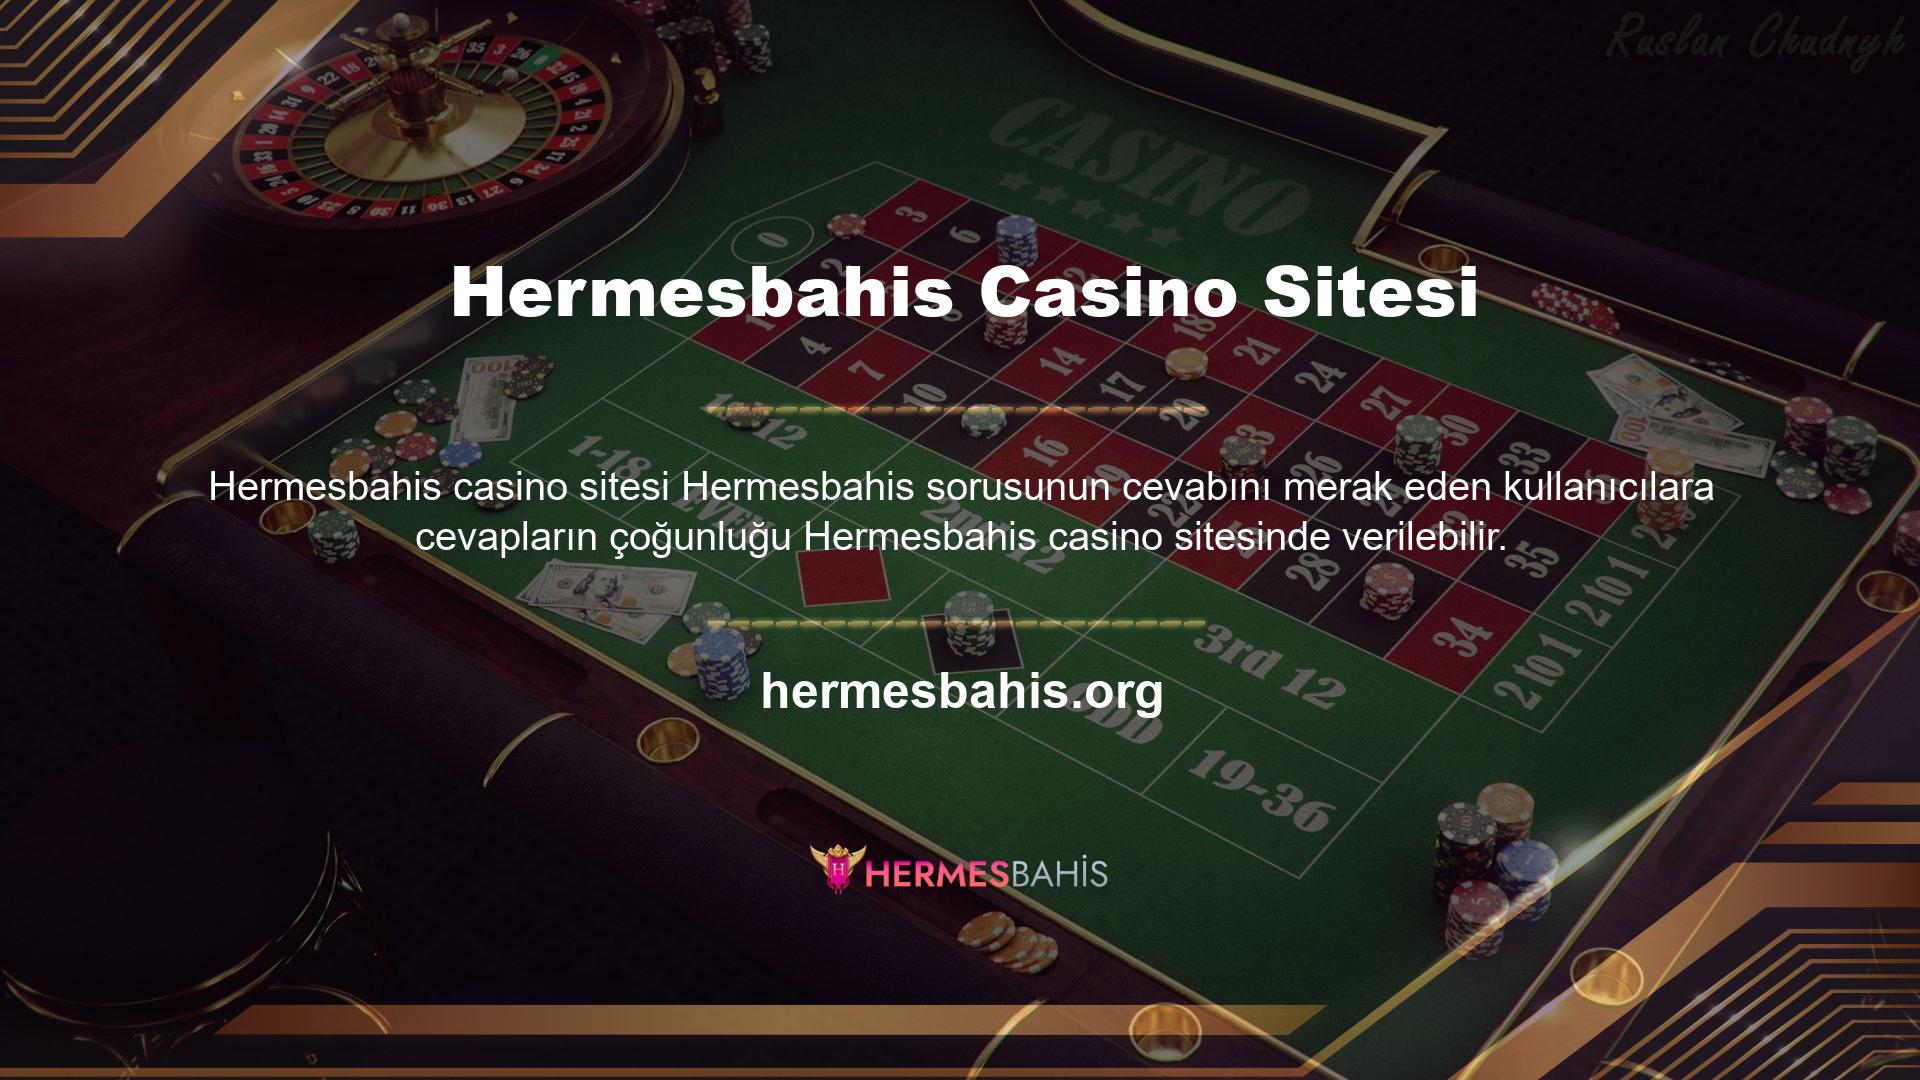 Hermesbahis casino'nun kalitesini değerlendirirken sağlam ve güvenilir altyapısının yanı sıra deneyimli personeli, oyun çeşitliliği ve eşit kazanma şansı göze çarpmaktadır